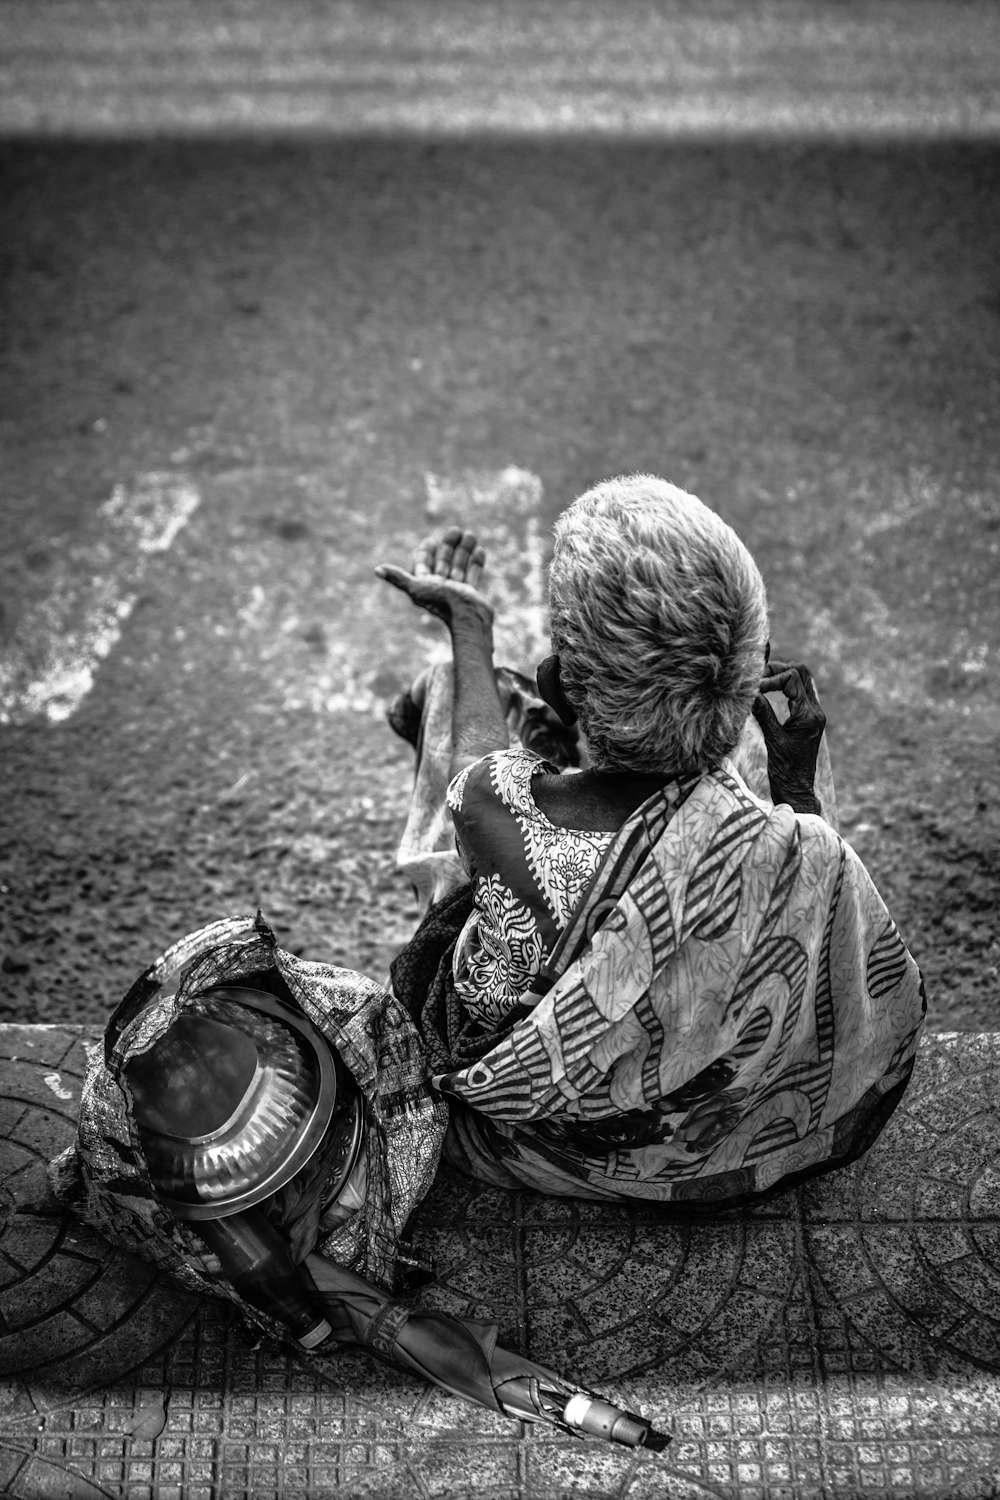 fotografia in scala di grigi di una persona seduta vicino alla strada